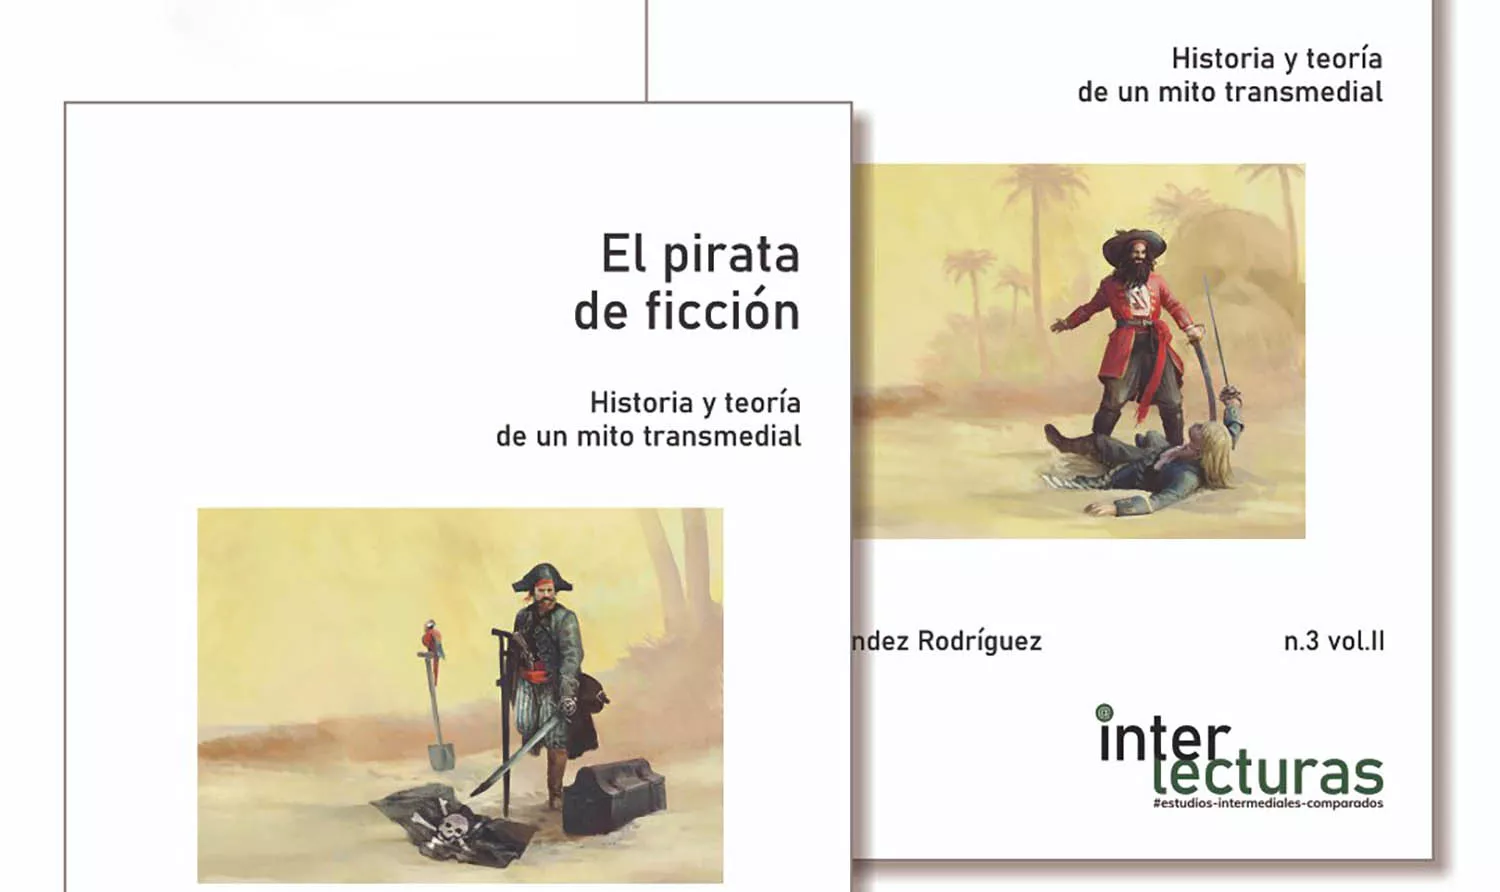 La ULE publica un libro sobre la historia y teoría de los piratas de ficción desde La Isla del Tesoro a Jack Sparrow